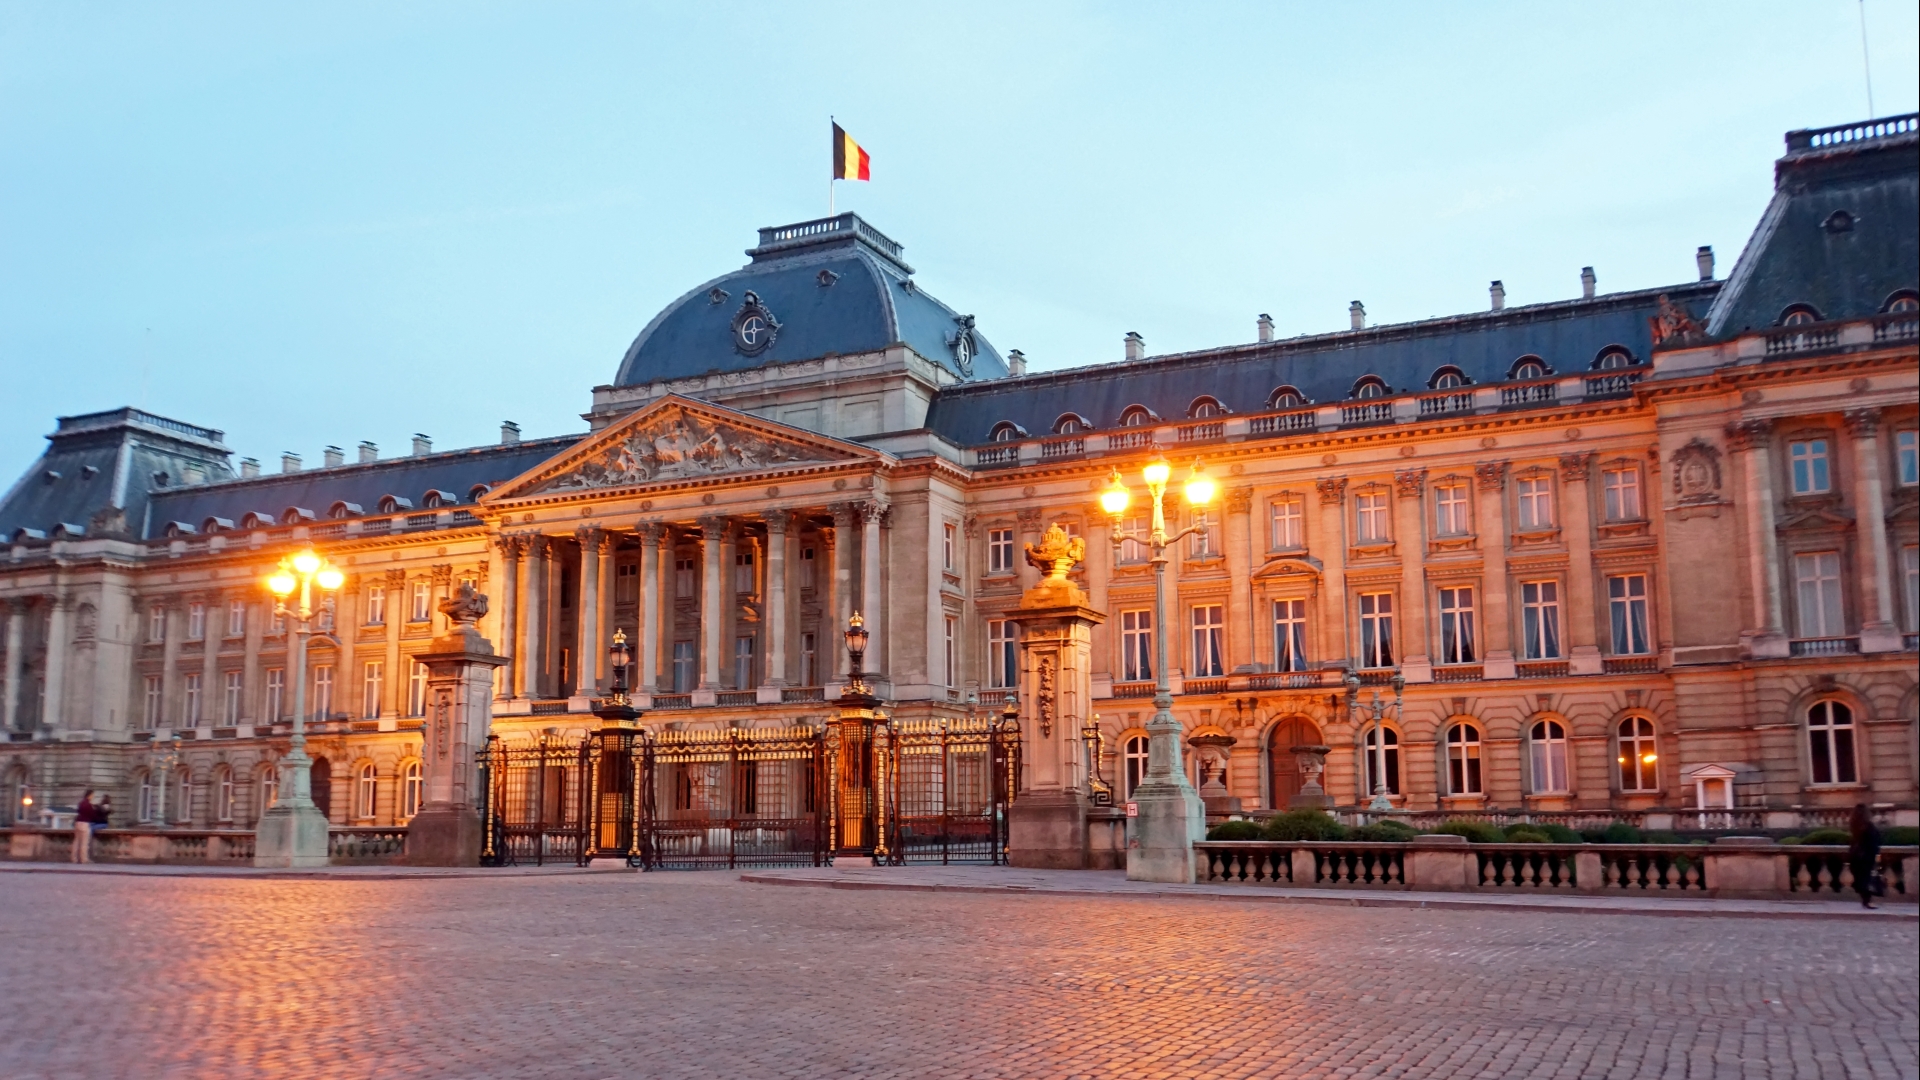 Скачать обои Королевский Дворец В Брюсселе на телефон бесплатно